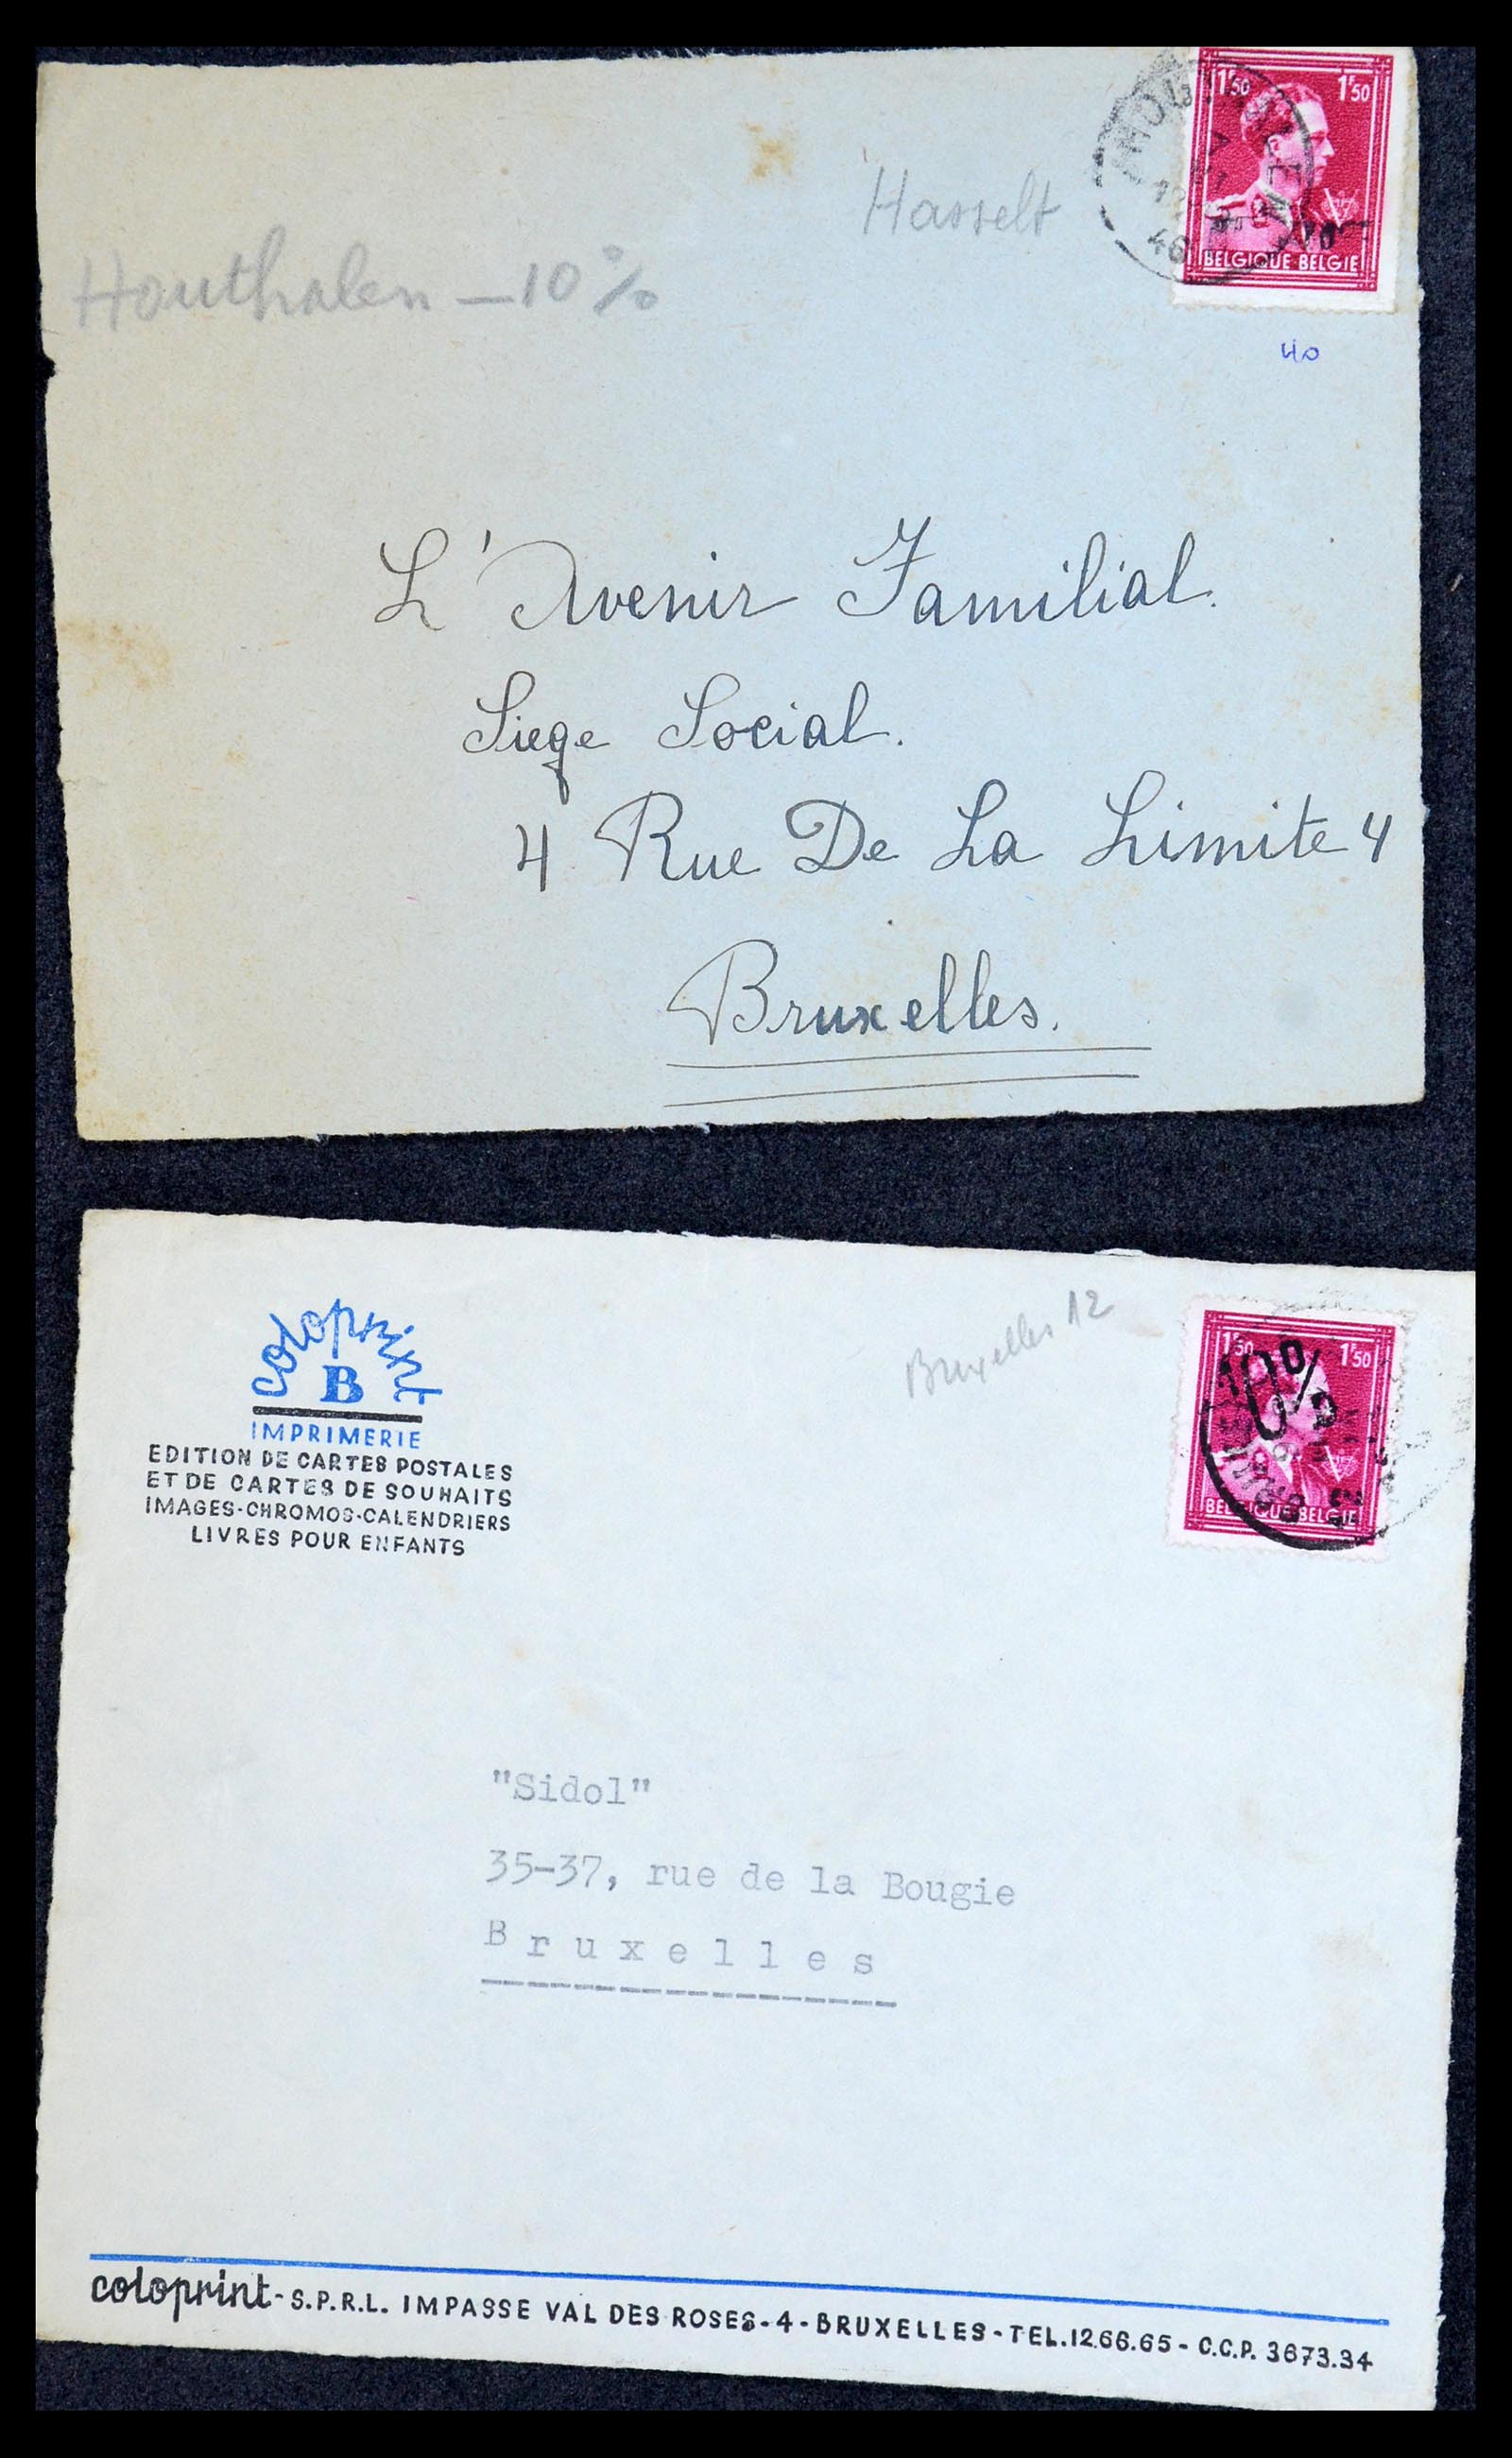 35733 209 - Stamp Collection 35733 Belgium 1946 -10% overprints.